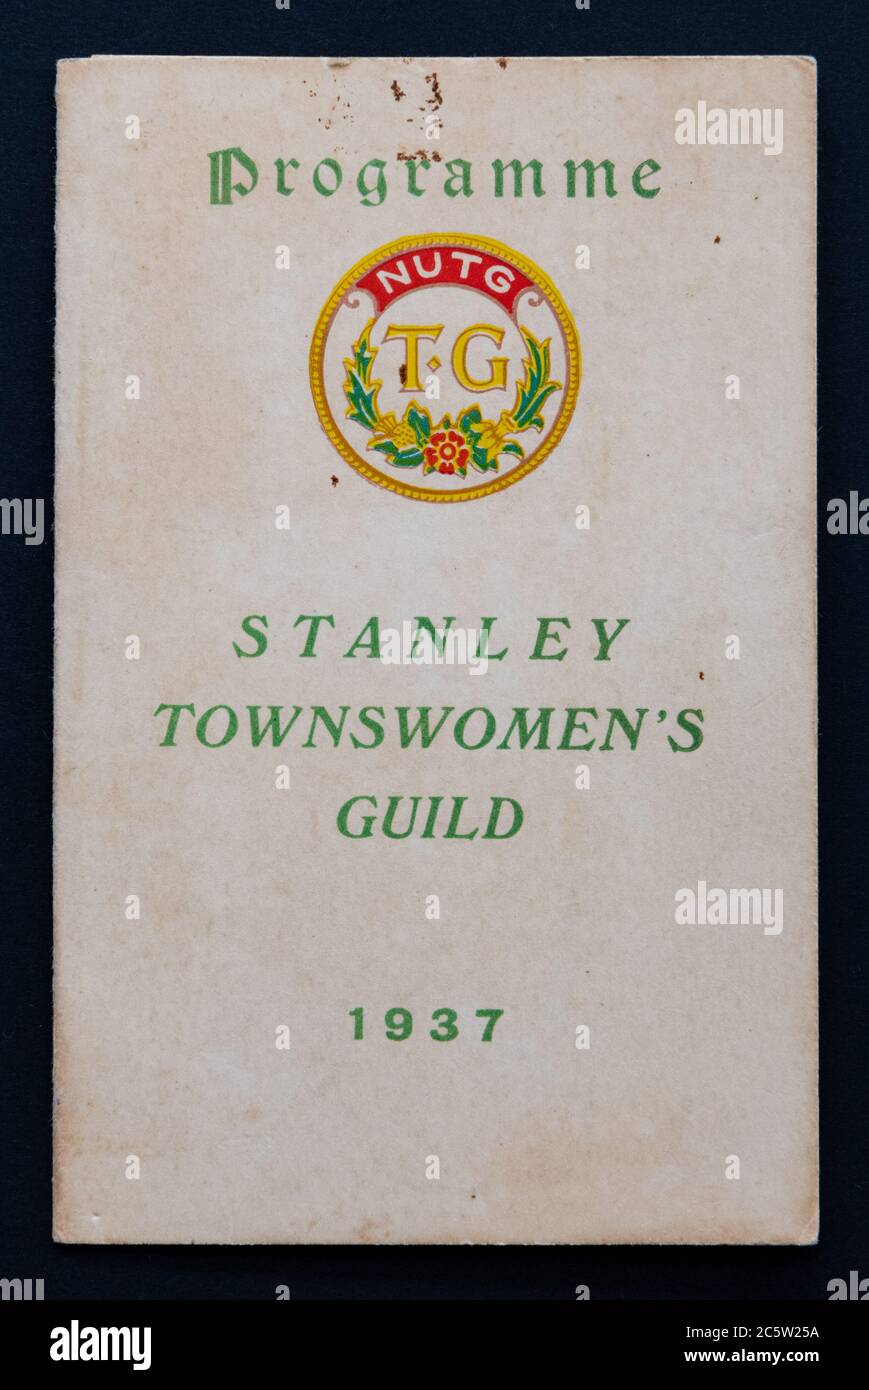 Stanley Townswomens Guild, NUTG - National Union of Townswomens Guilds, programma di eventi per il 1937, Stanley, County Durham, Inghilterra, Regno Unito Foto Stock